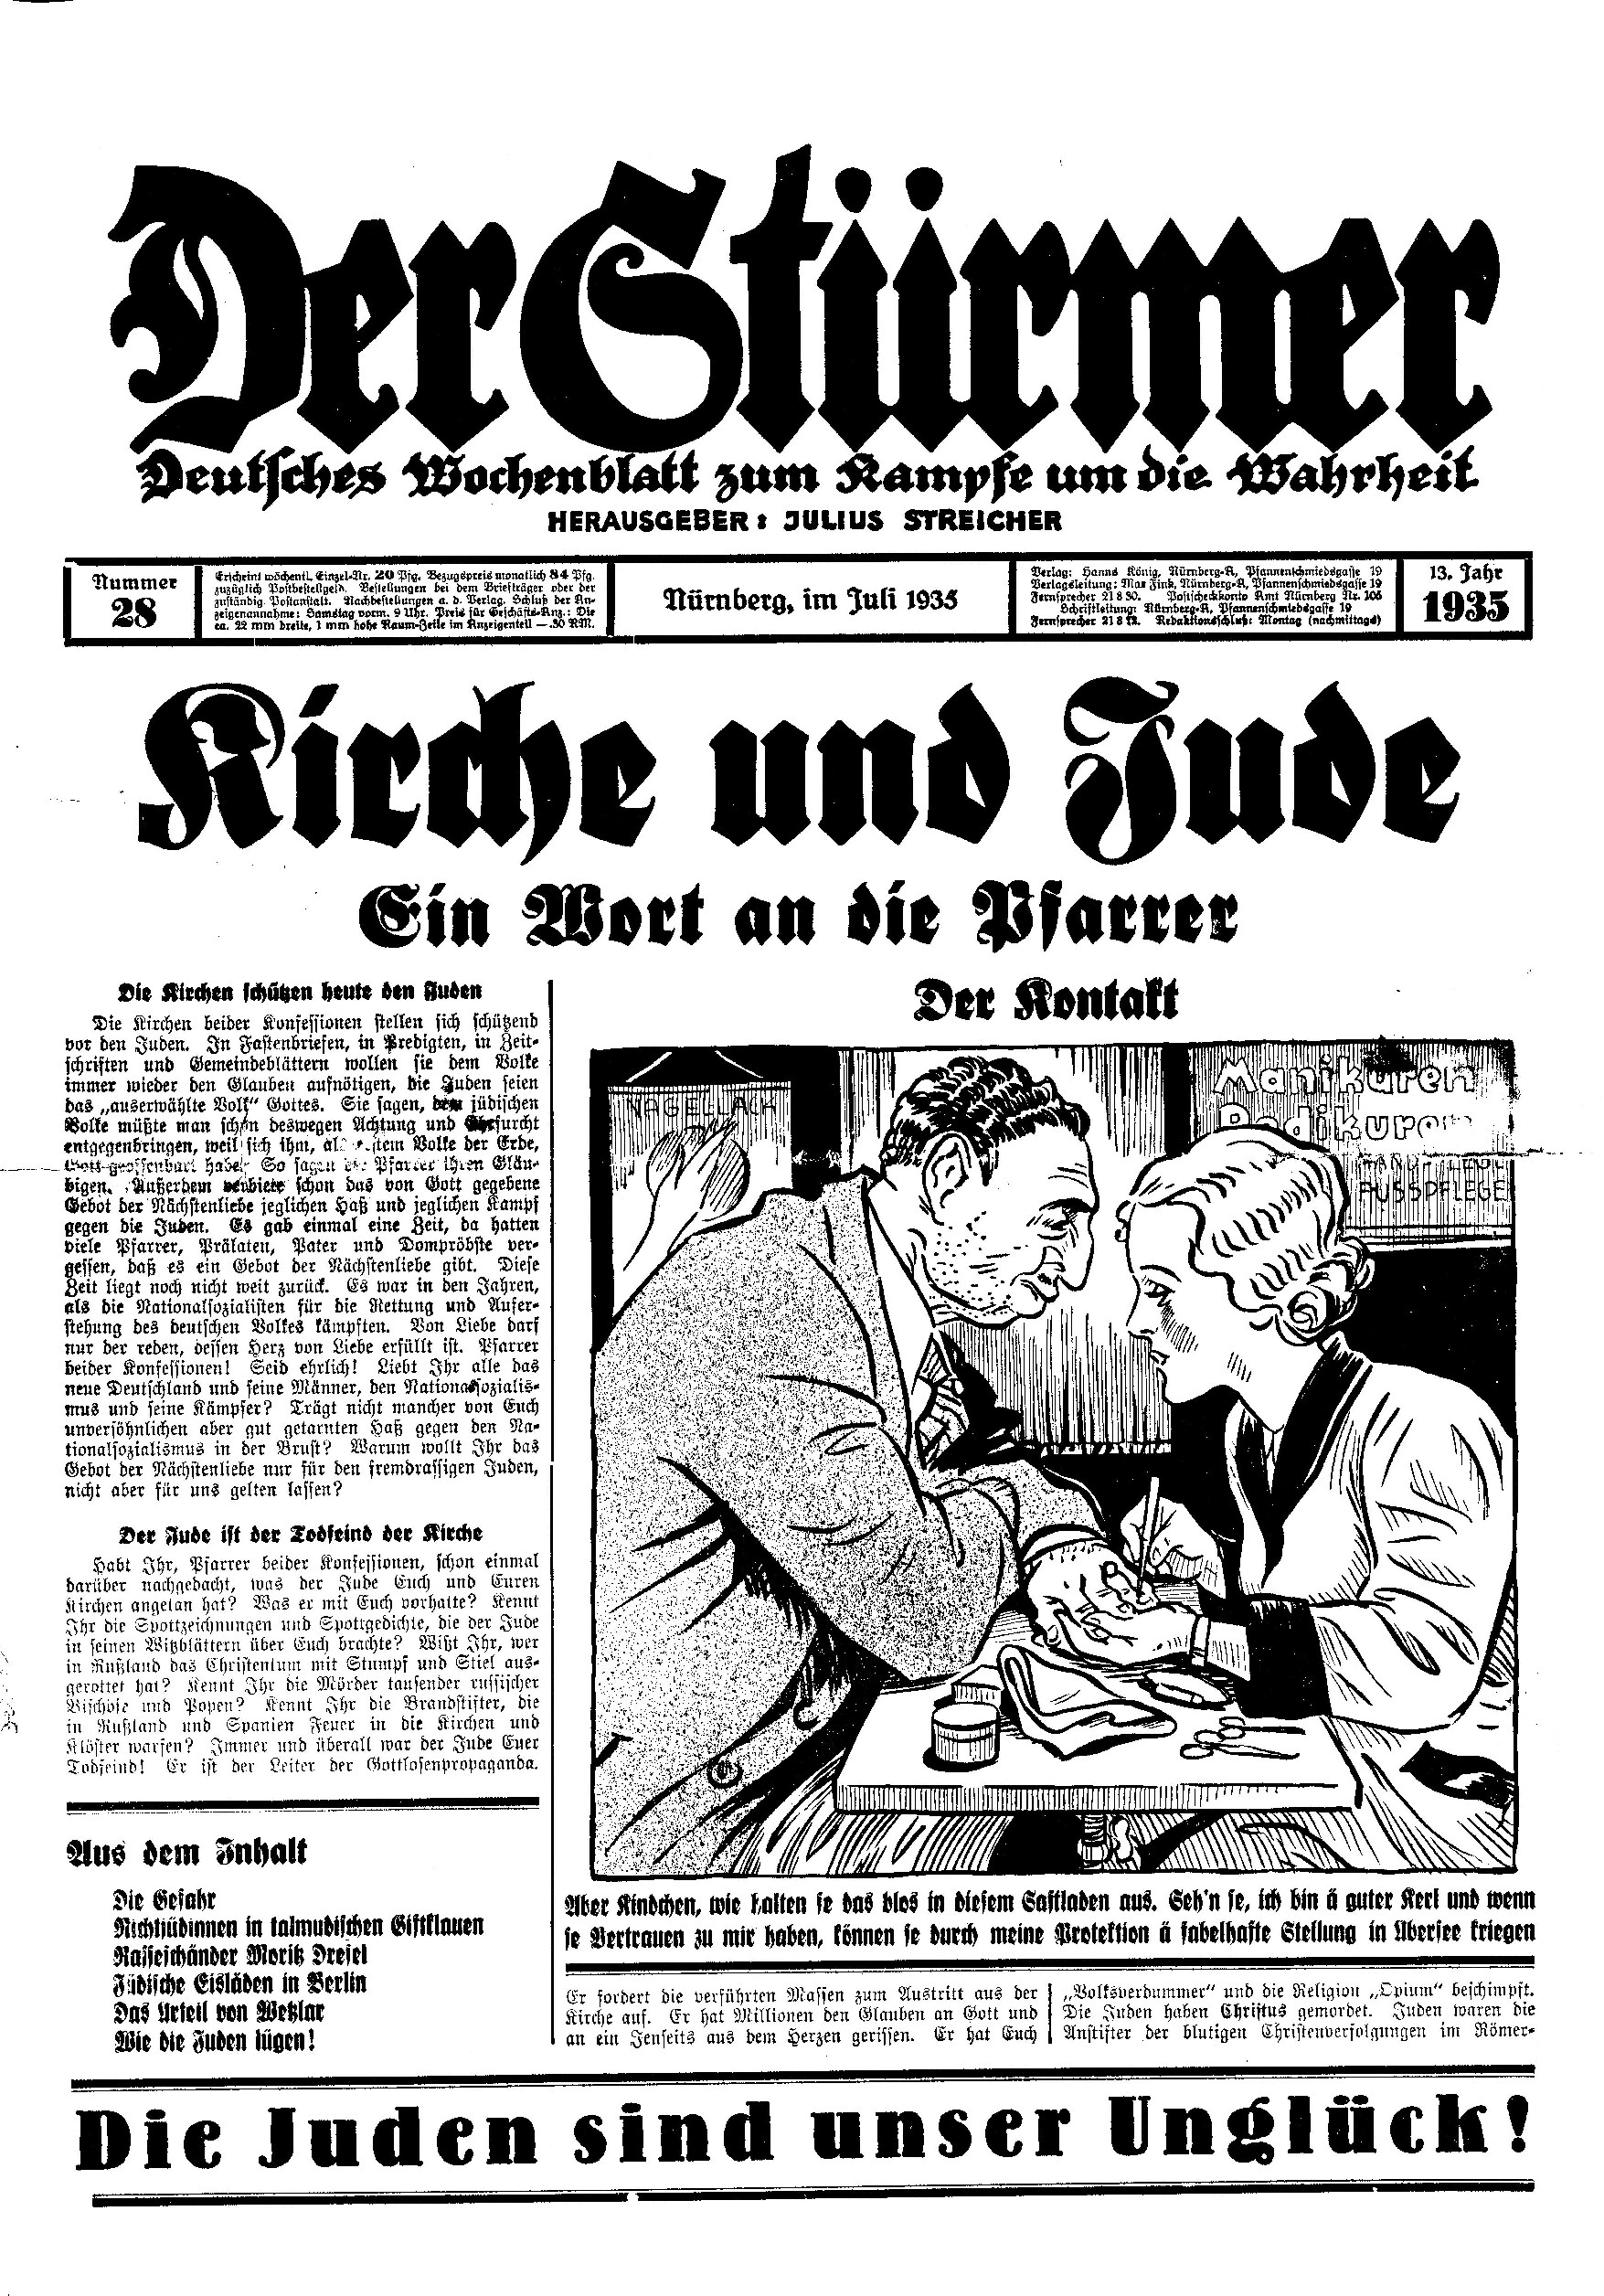 Der Stürmer - 1935 Nr. 28 (12 S., Scan, Fraktur)